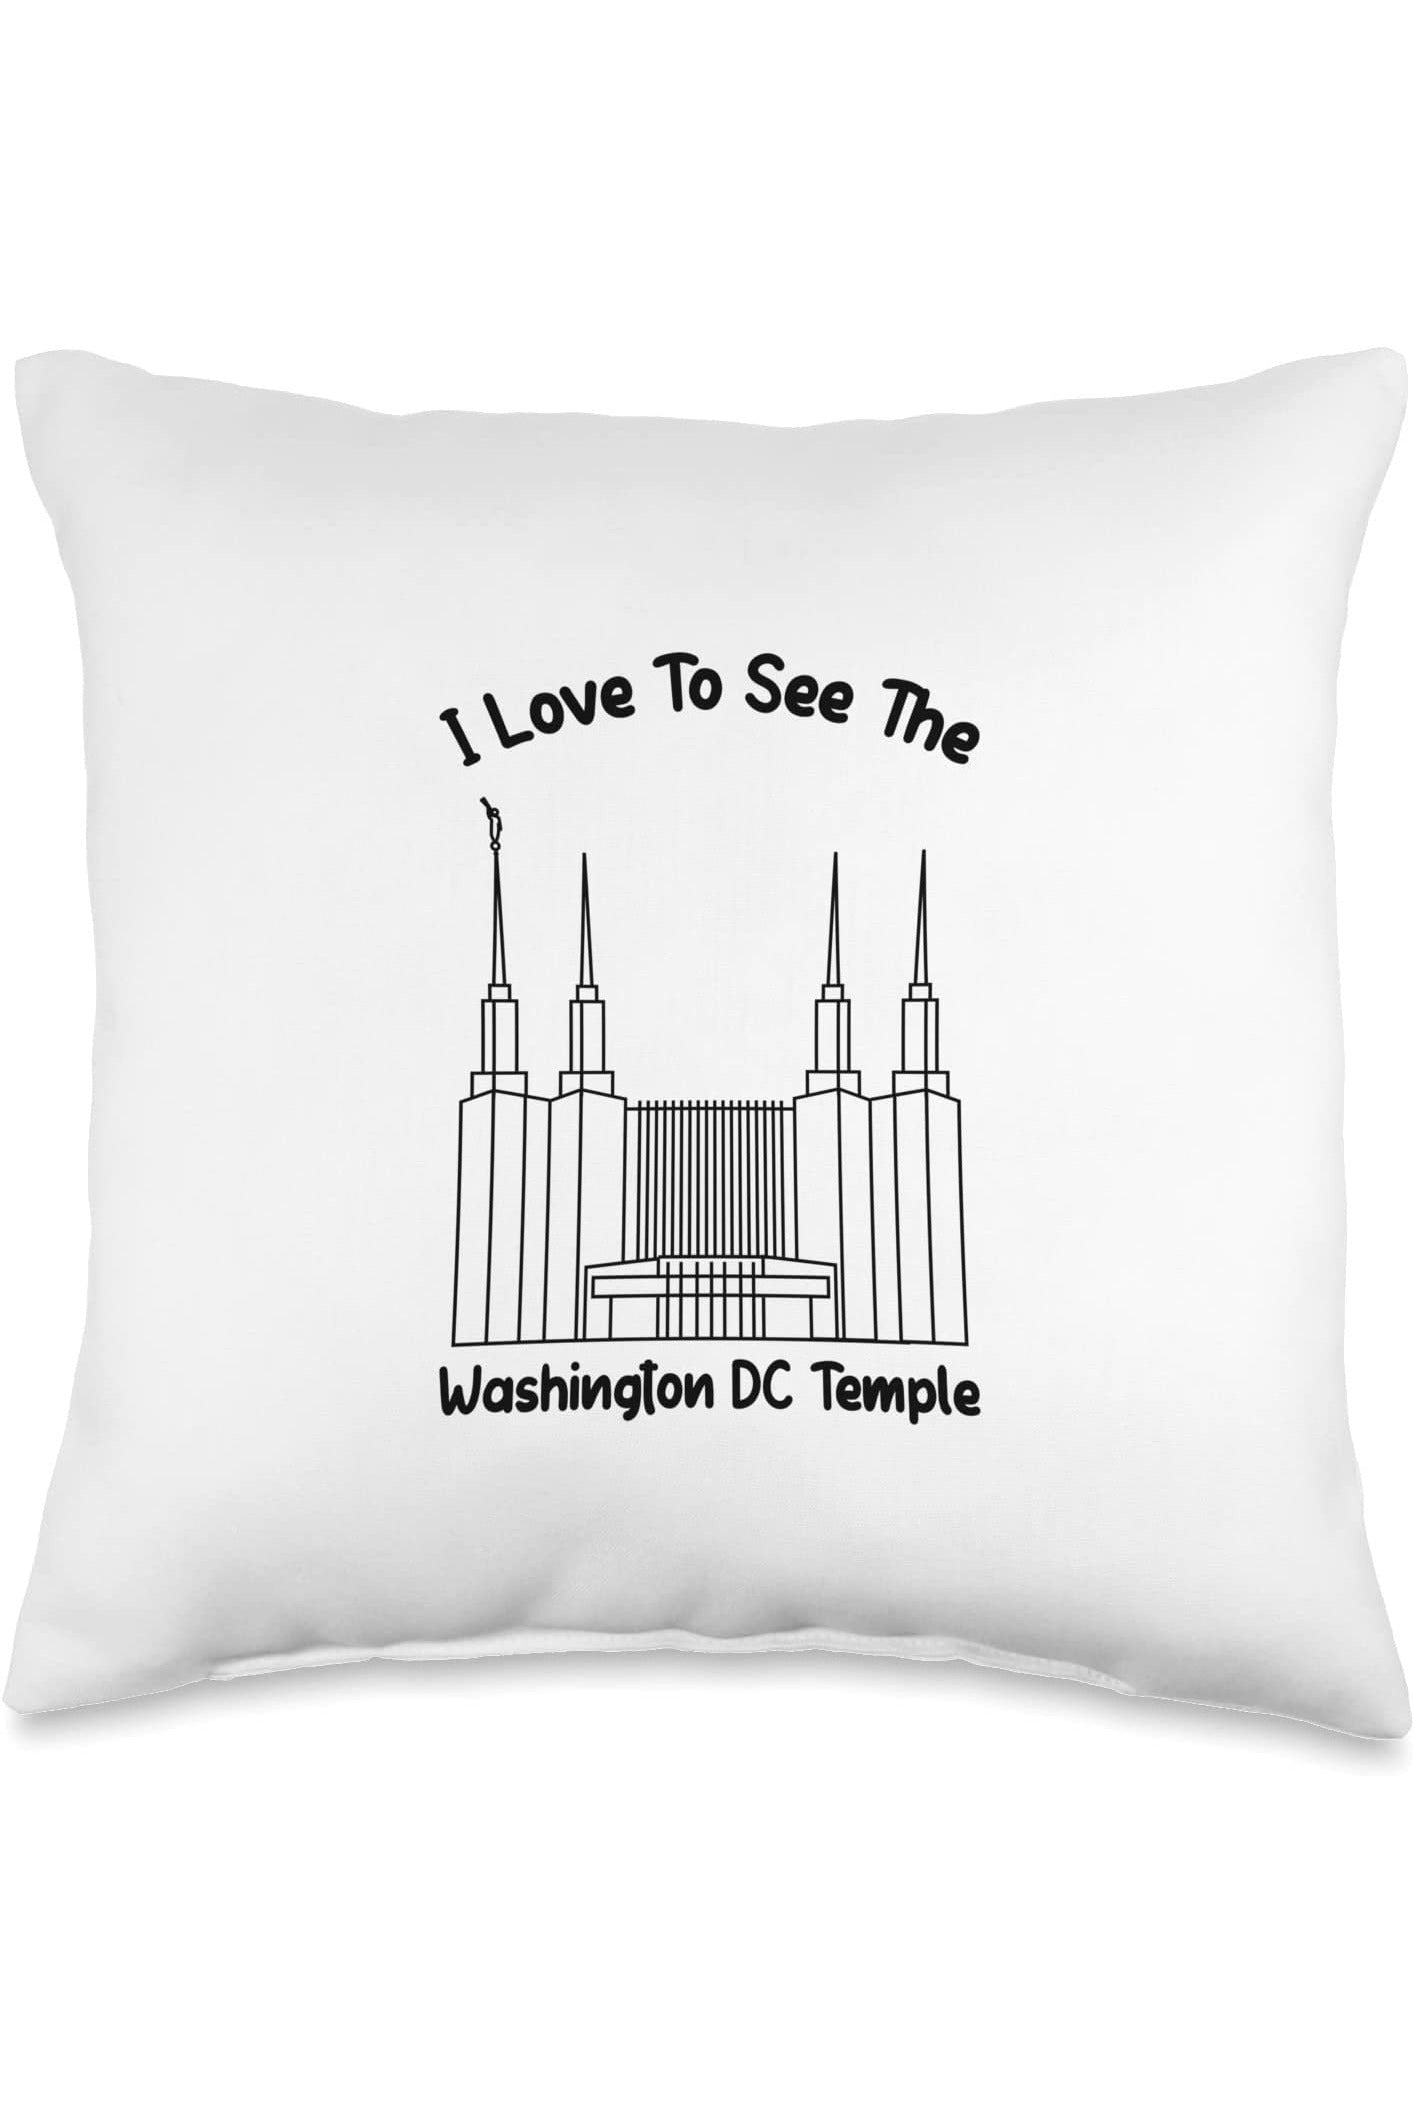 Washington DC Temple Throw Pillows - Primary Style (English) US